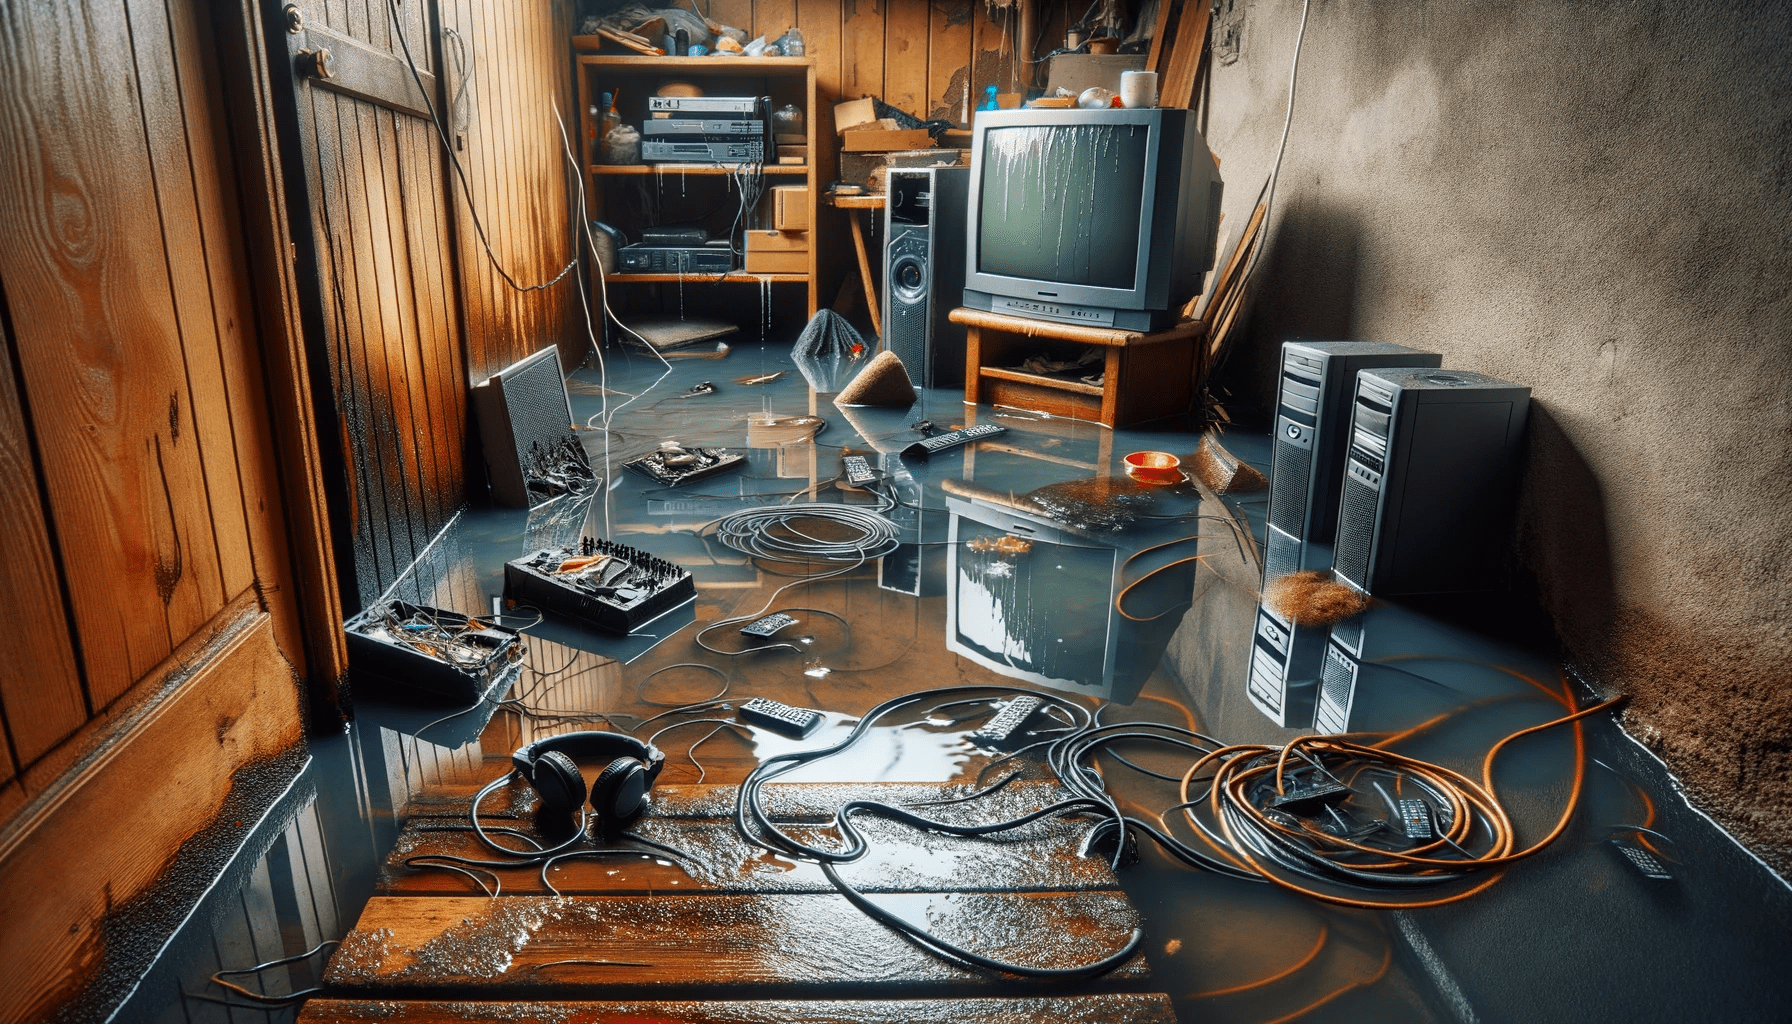 Keller nach Überschwemmung mit beschädigten Elektronikgeräten, nassen Kabeln und durchnässtem Teppich.